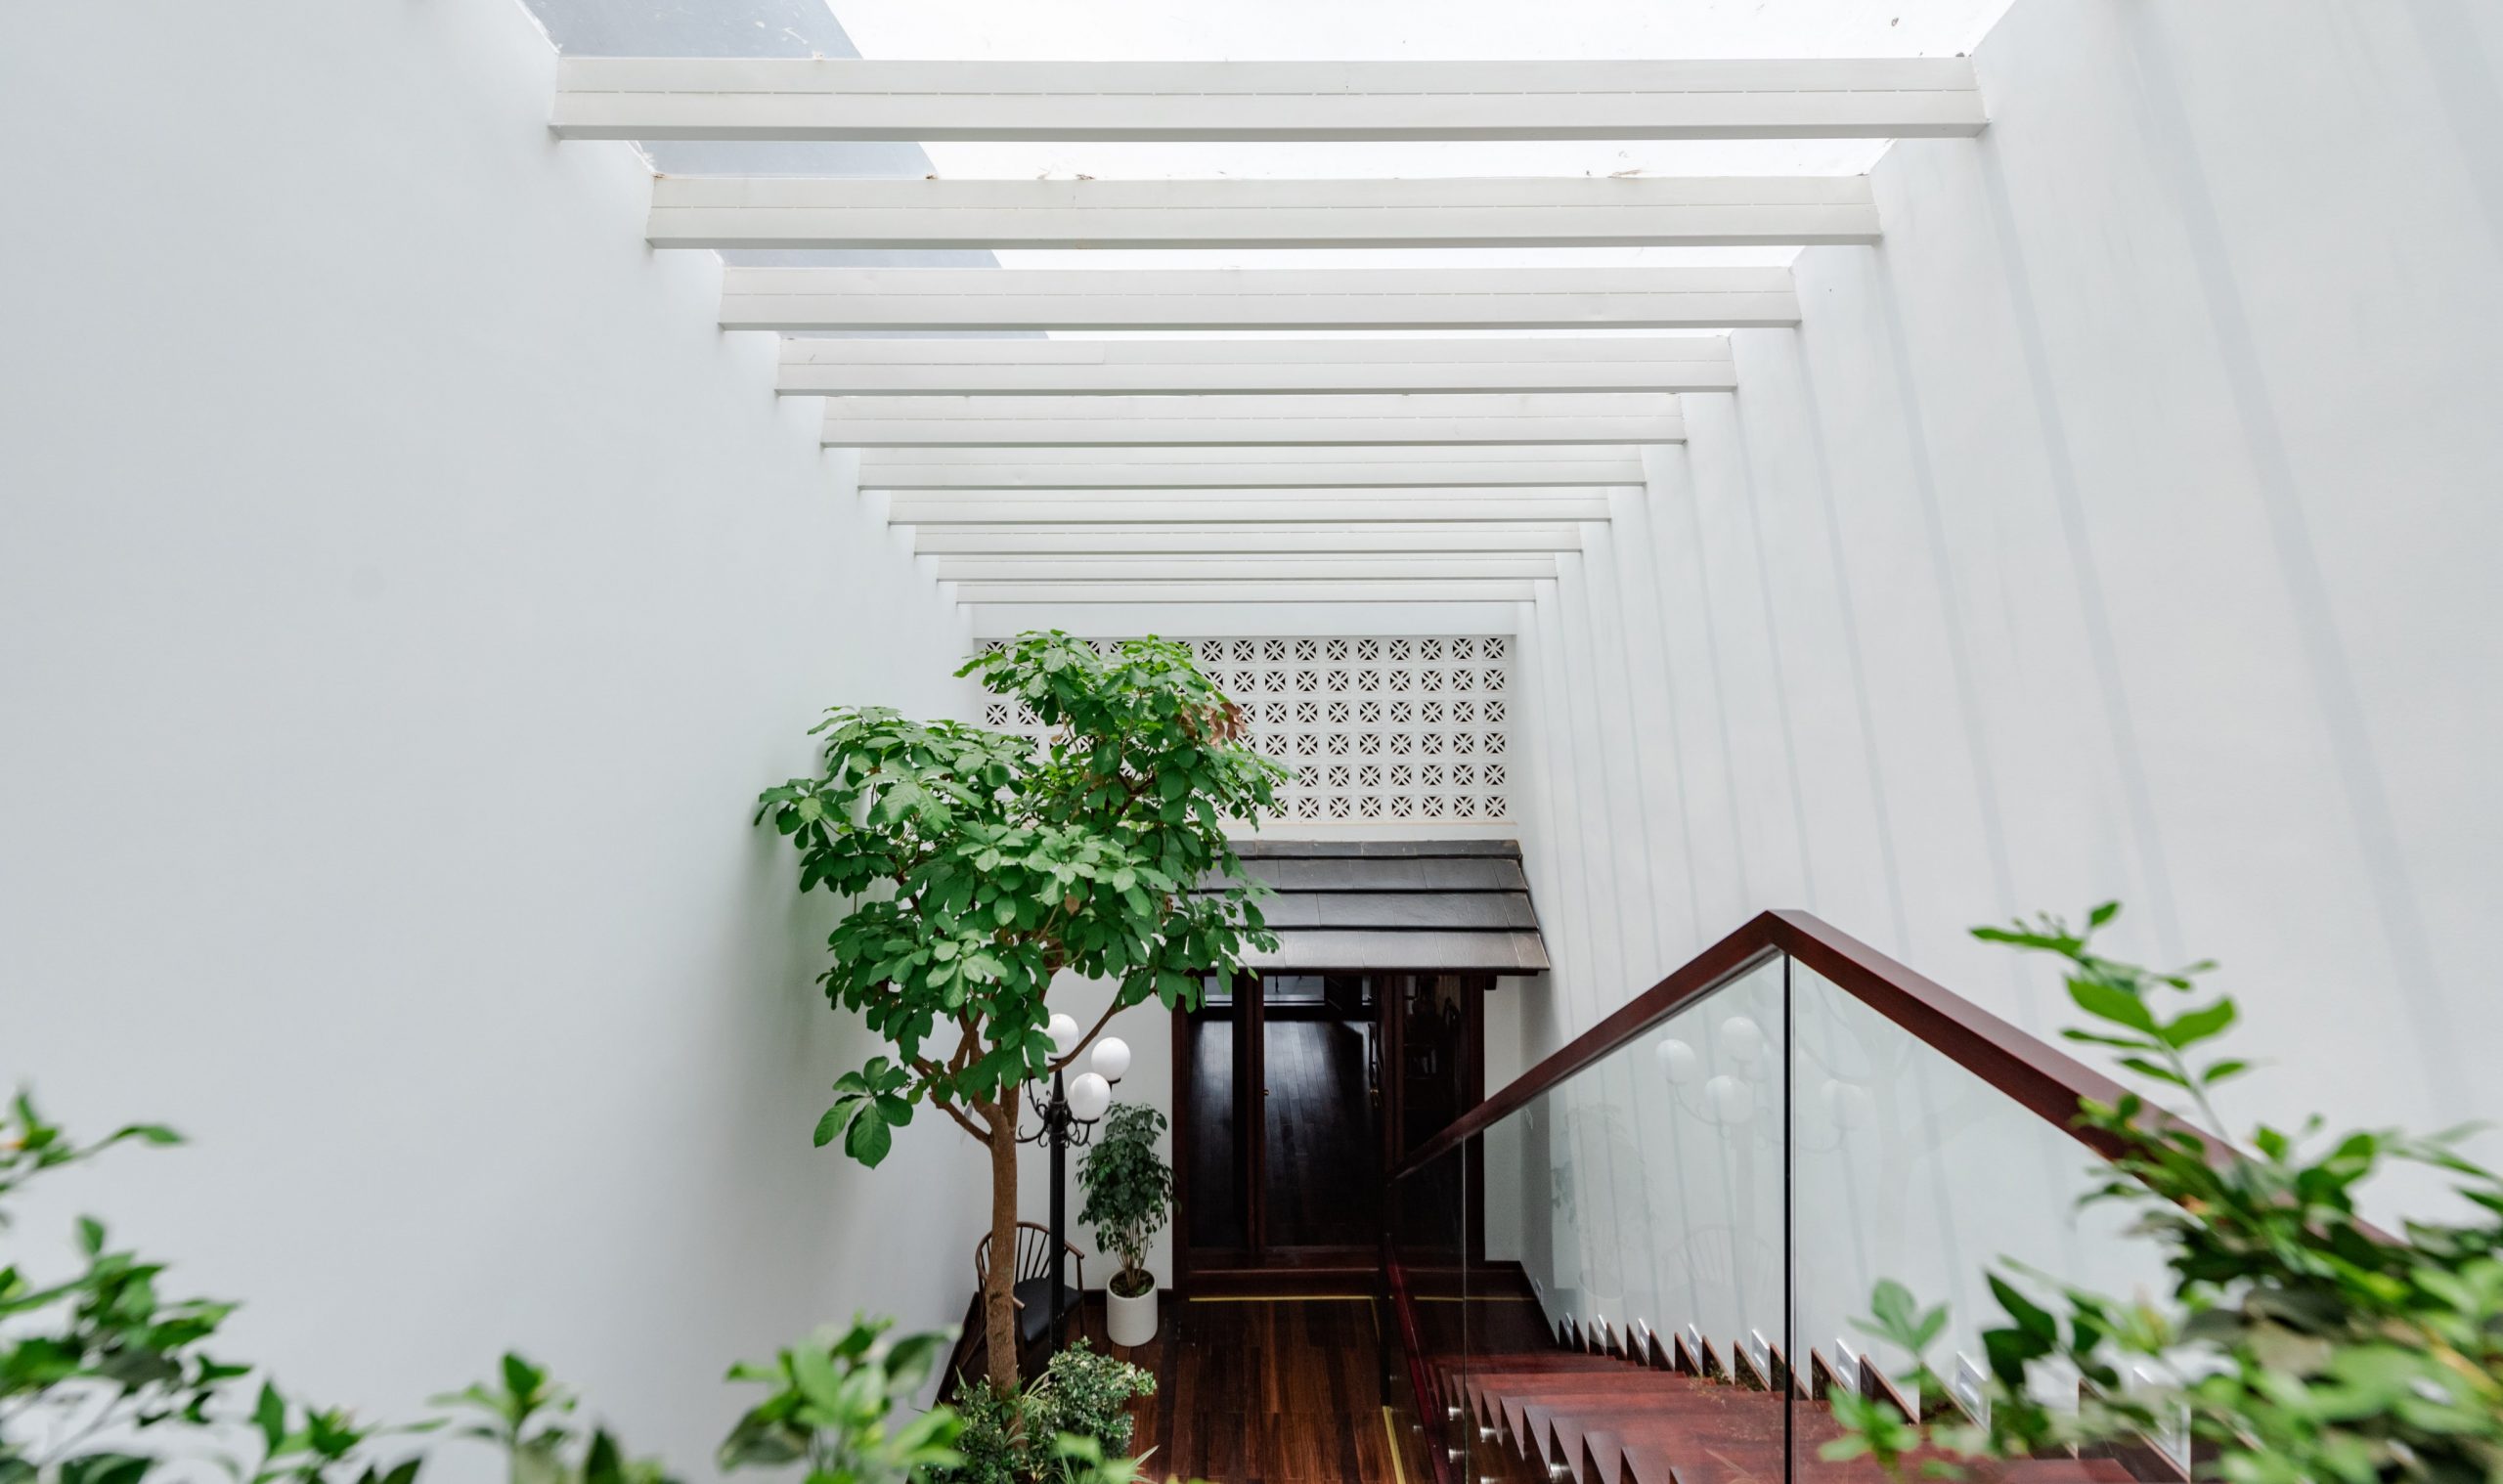 Quynh House với giếng trời và cây xanh trong nhà giúp cho không khí thoáng mát và tràn ngập ánh sáng tự nhiên